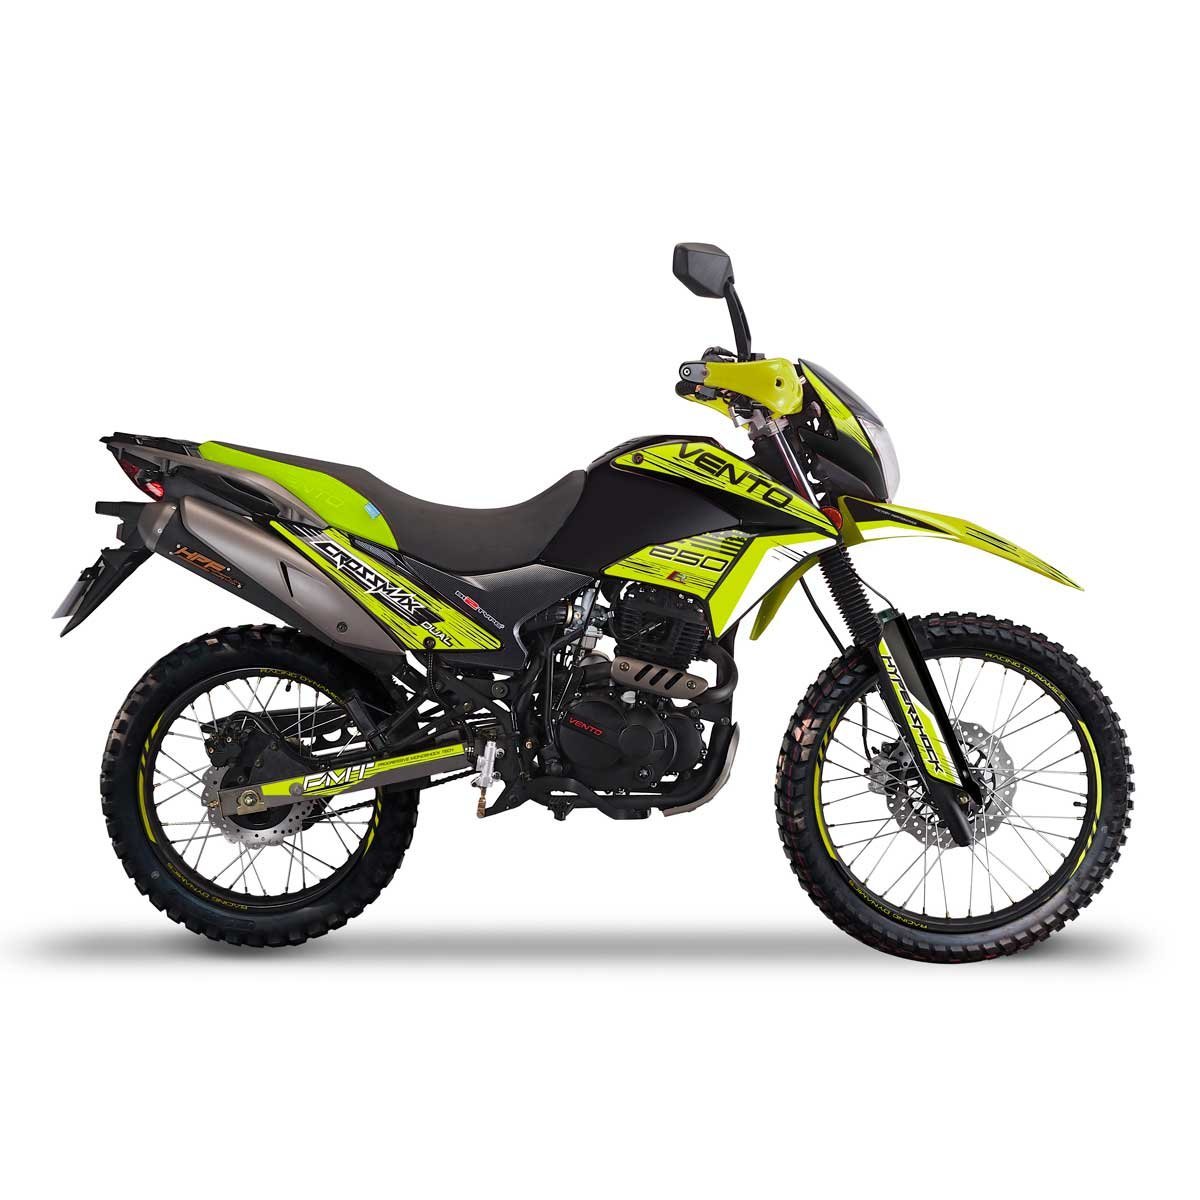 Motocicleta Crossmax Verde 250Cc 2019 Vento